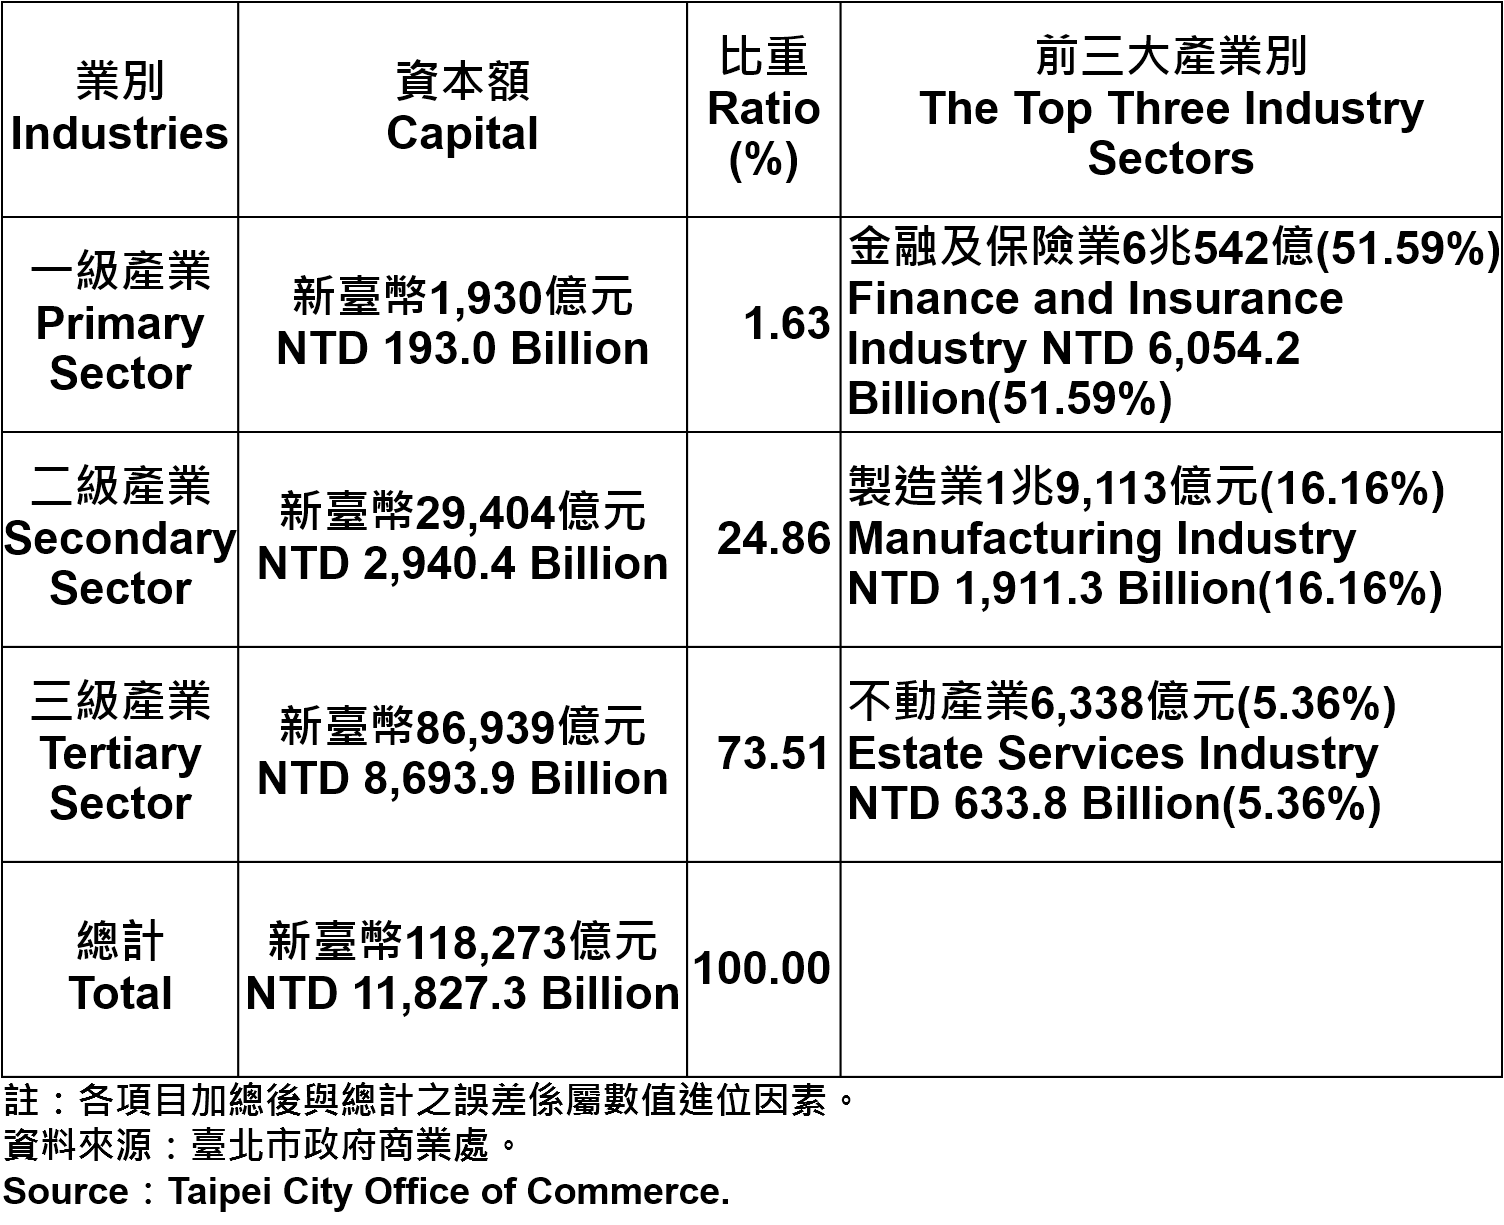 表4、臺北市登記之公司資本總額—2017Q2 Capital for the Companies and Firms Registered in Taipei City—2017Q2